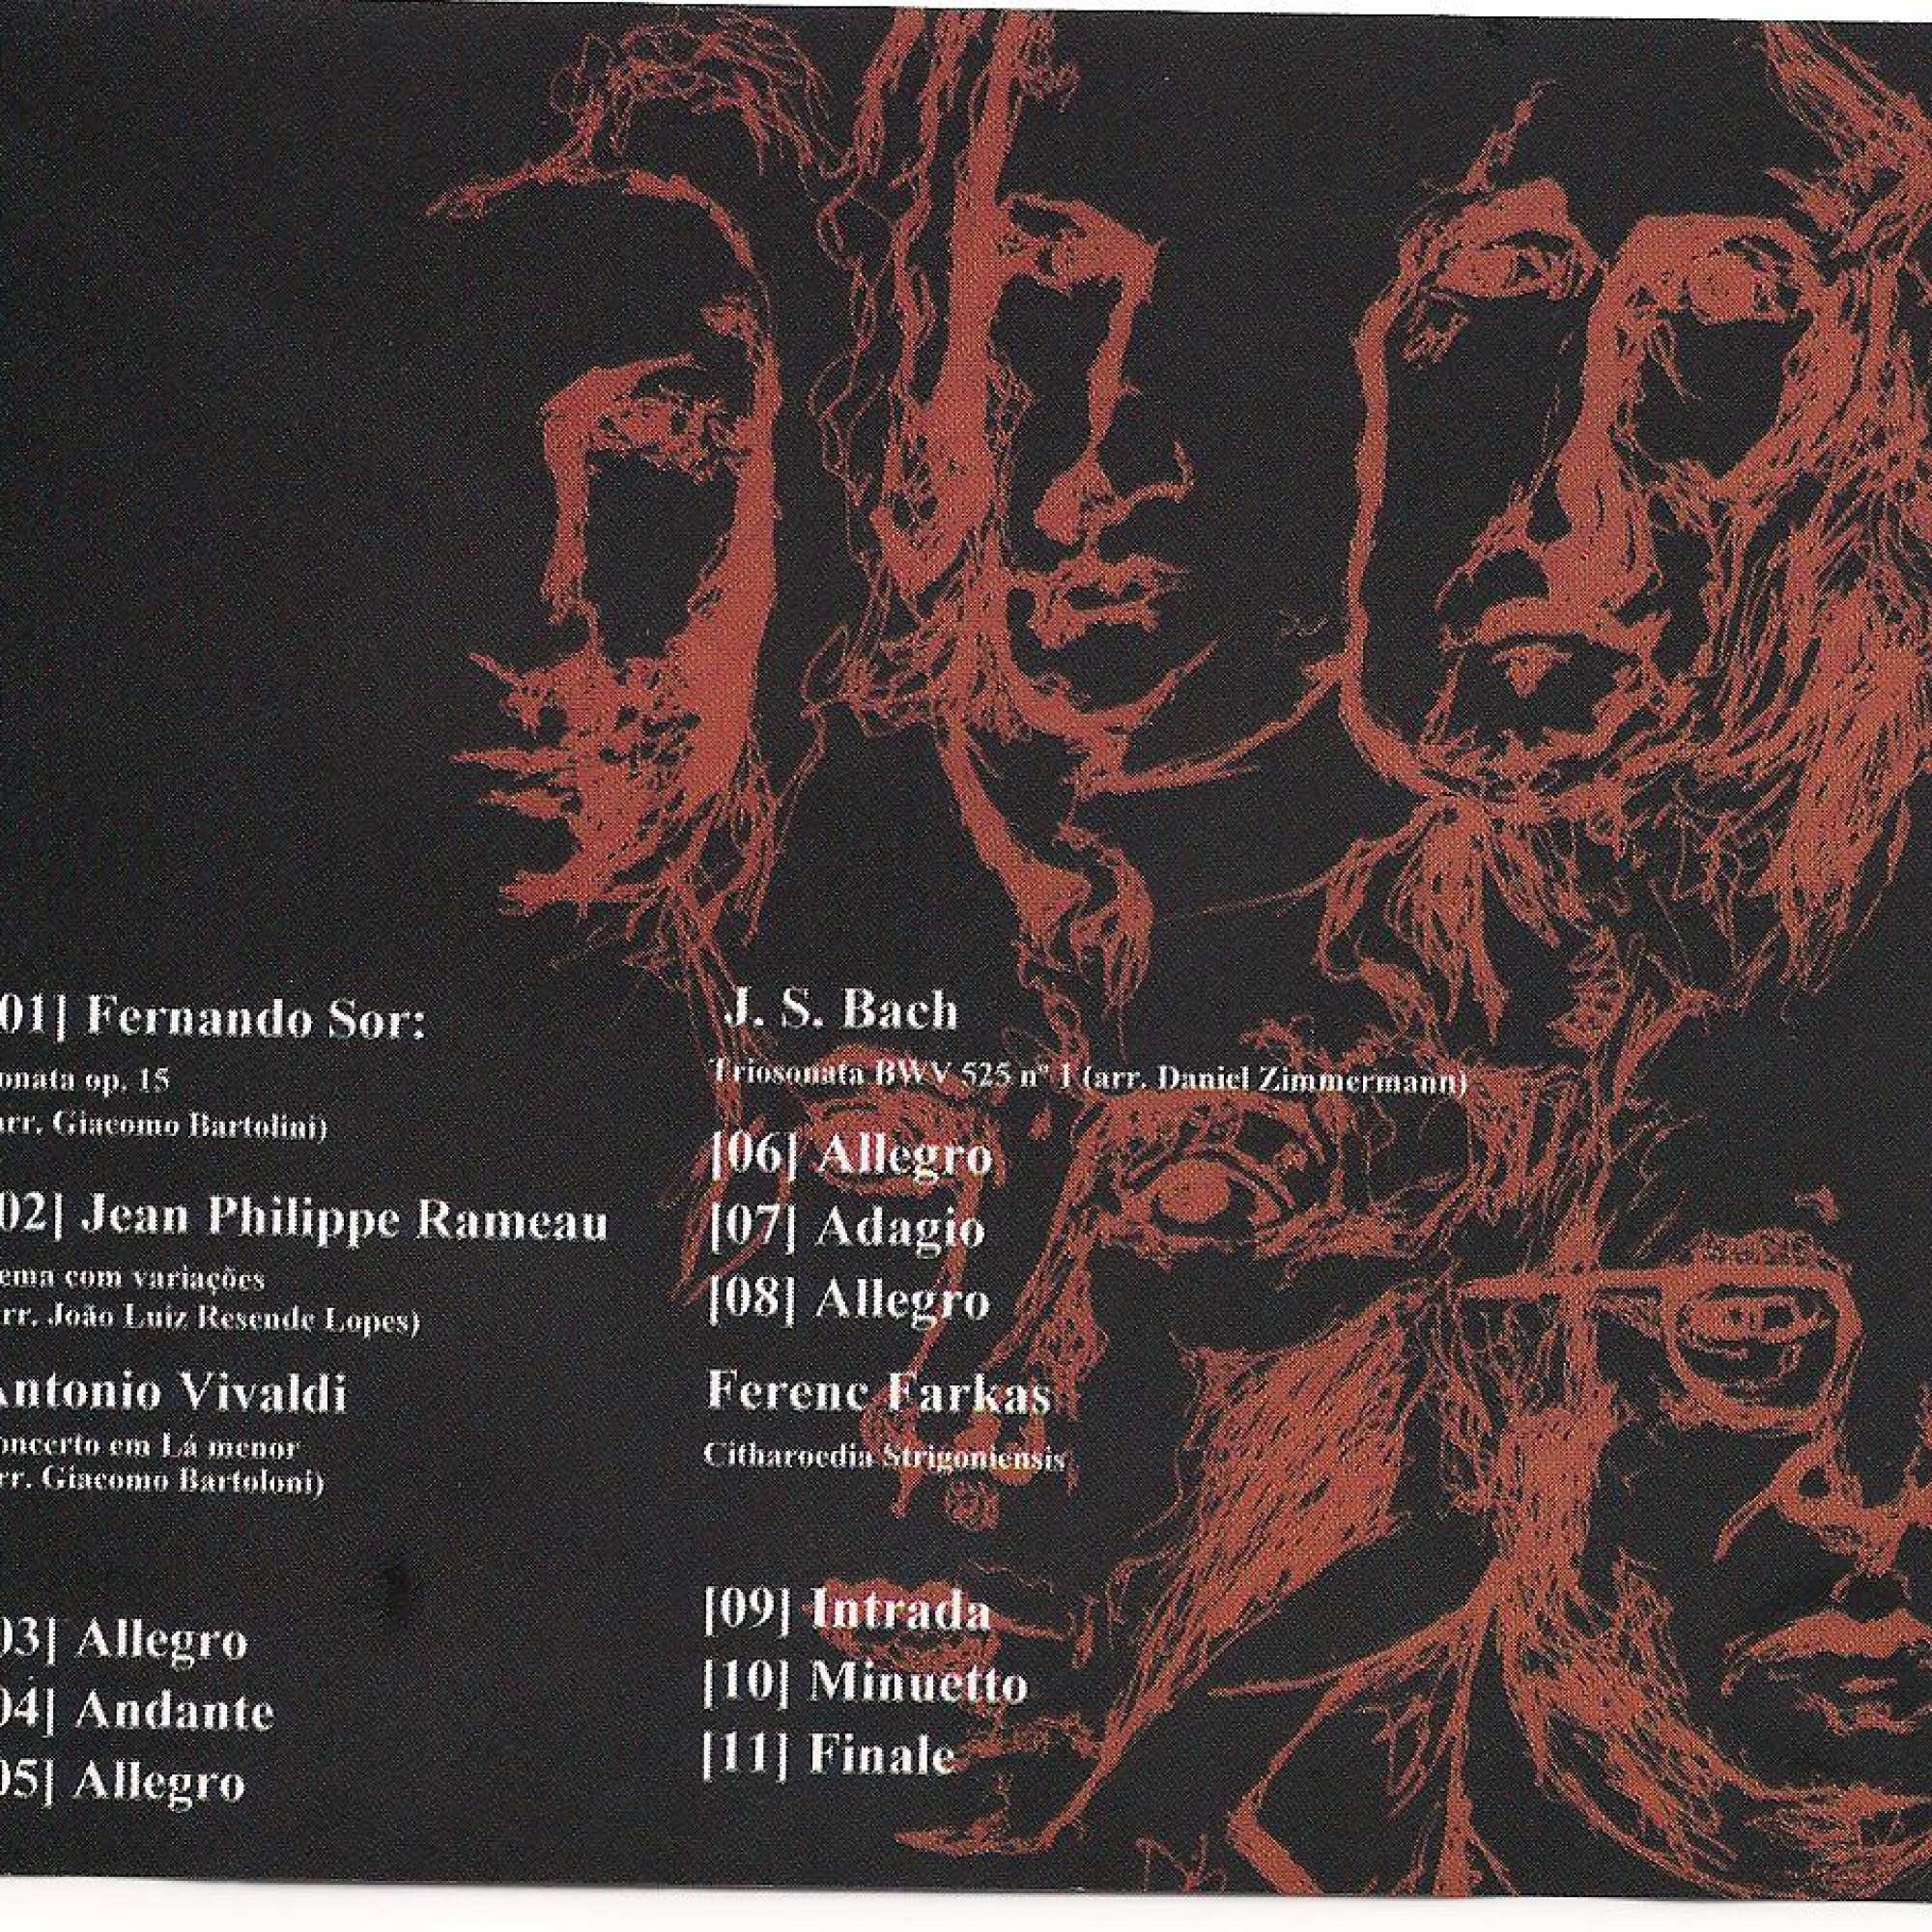 Imagens do álbum